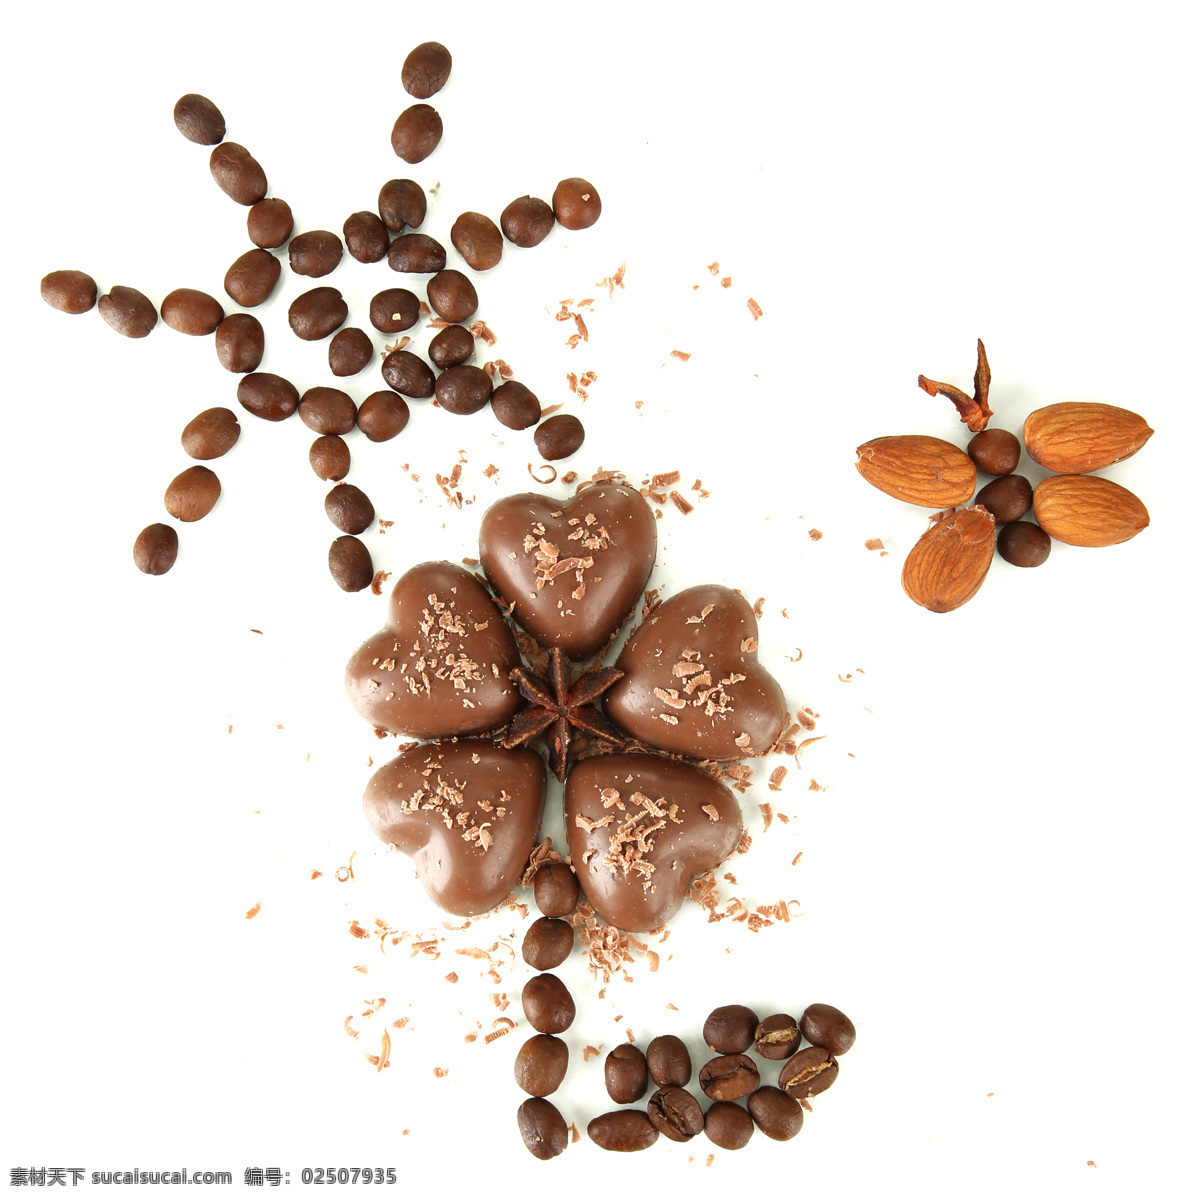 巧克力 心形 咖啡豆 咖啡子 豆豆 咖啡 杏仁 咖啡原料 美食摄影 食物原料 餐饮美食